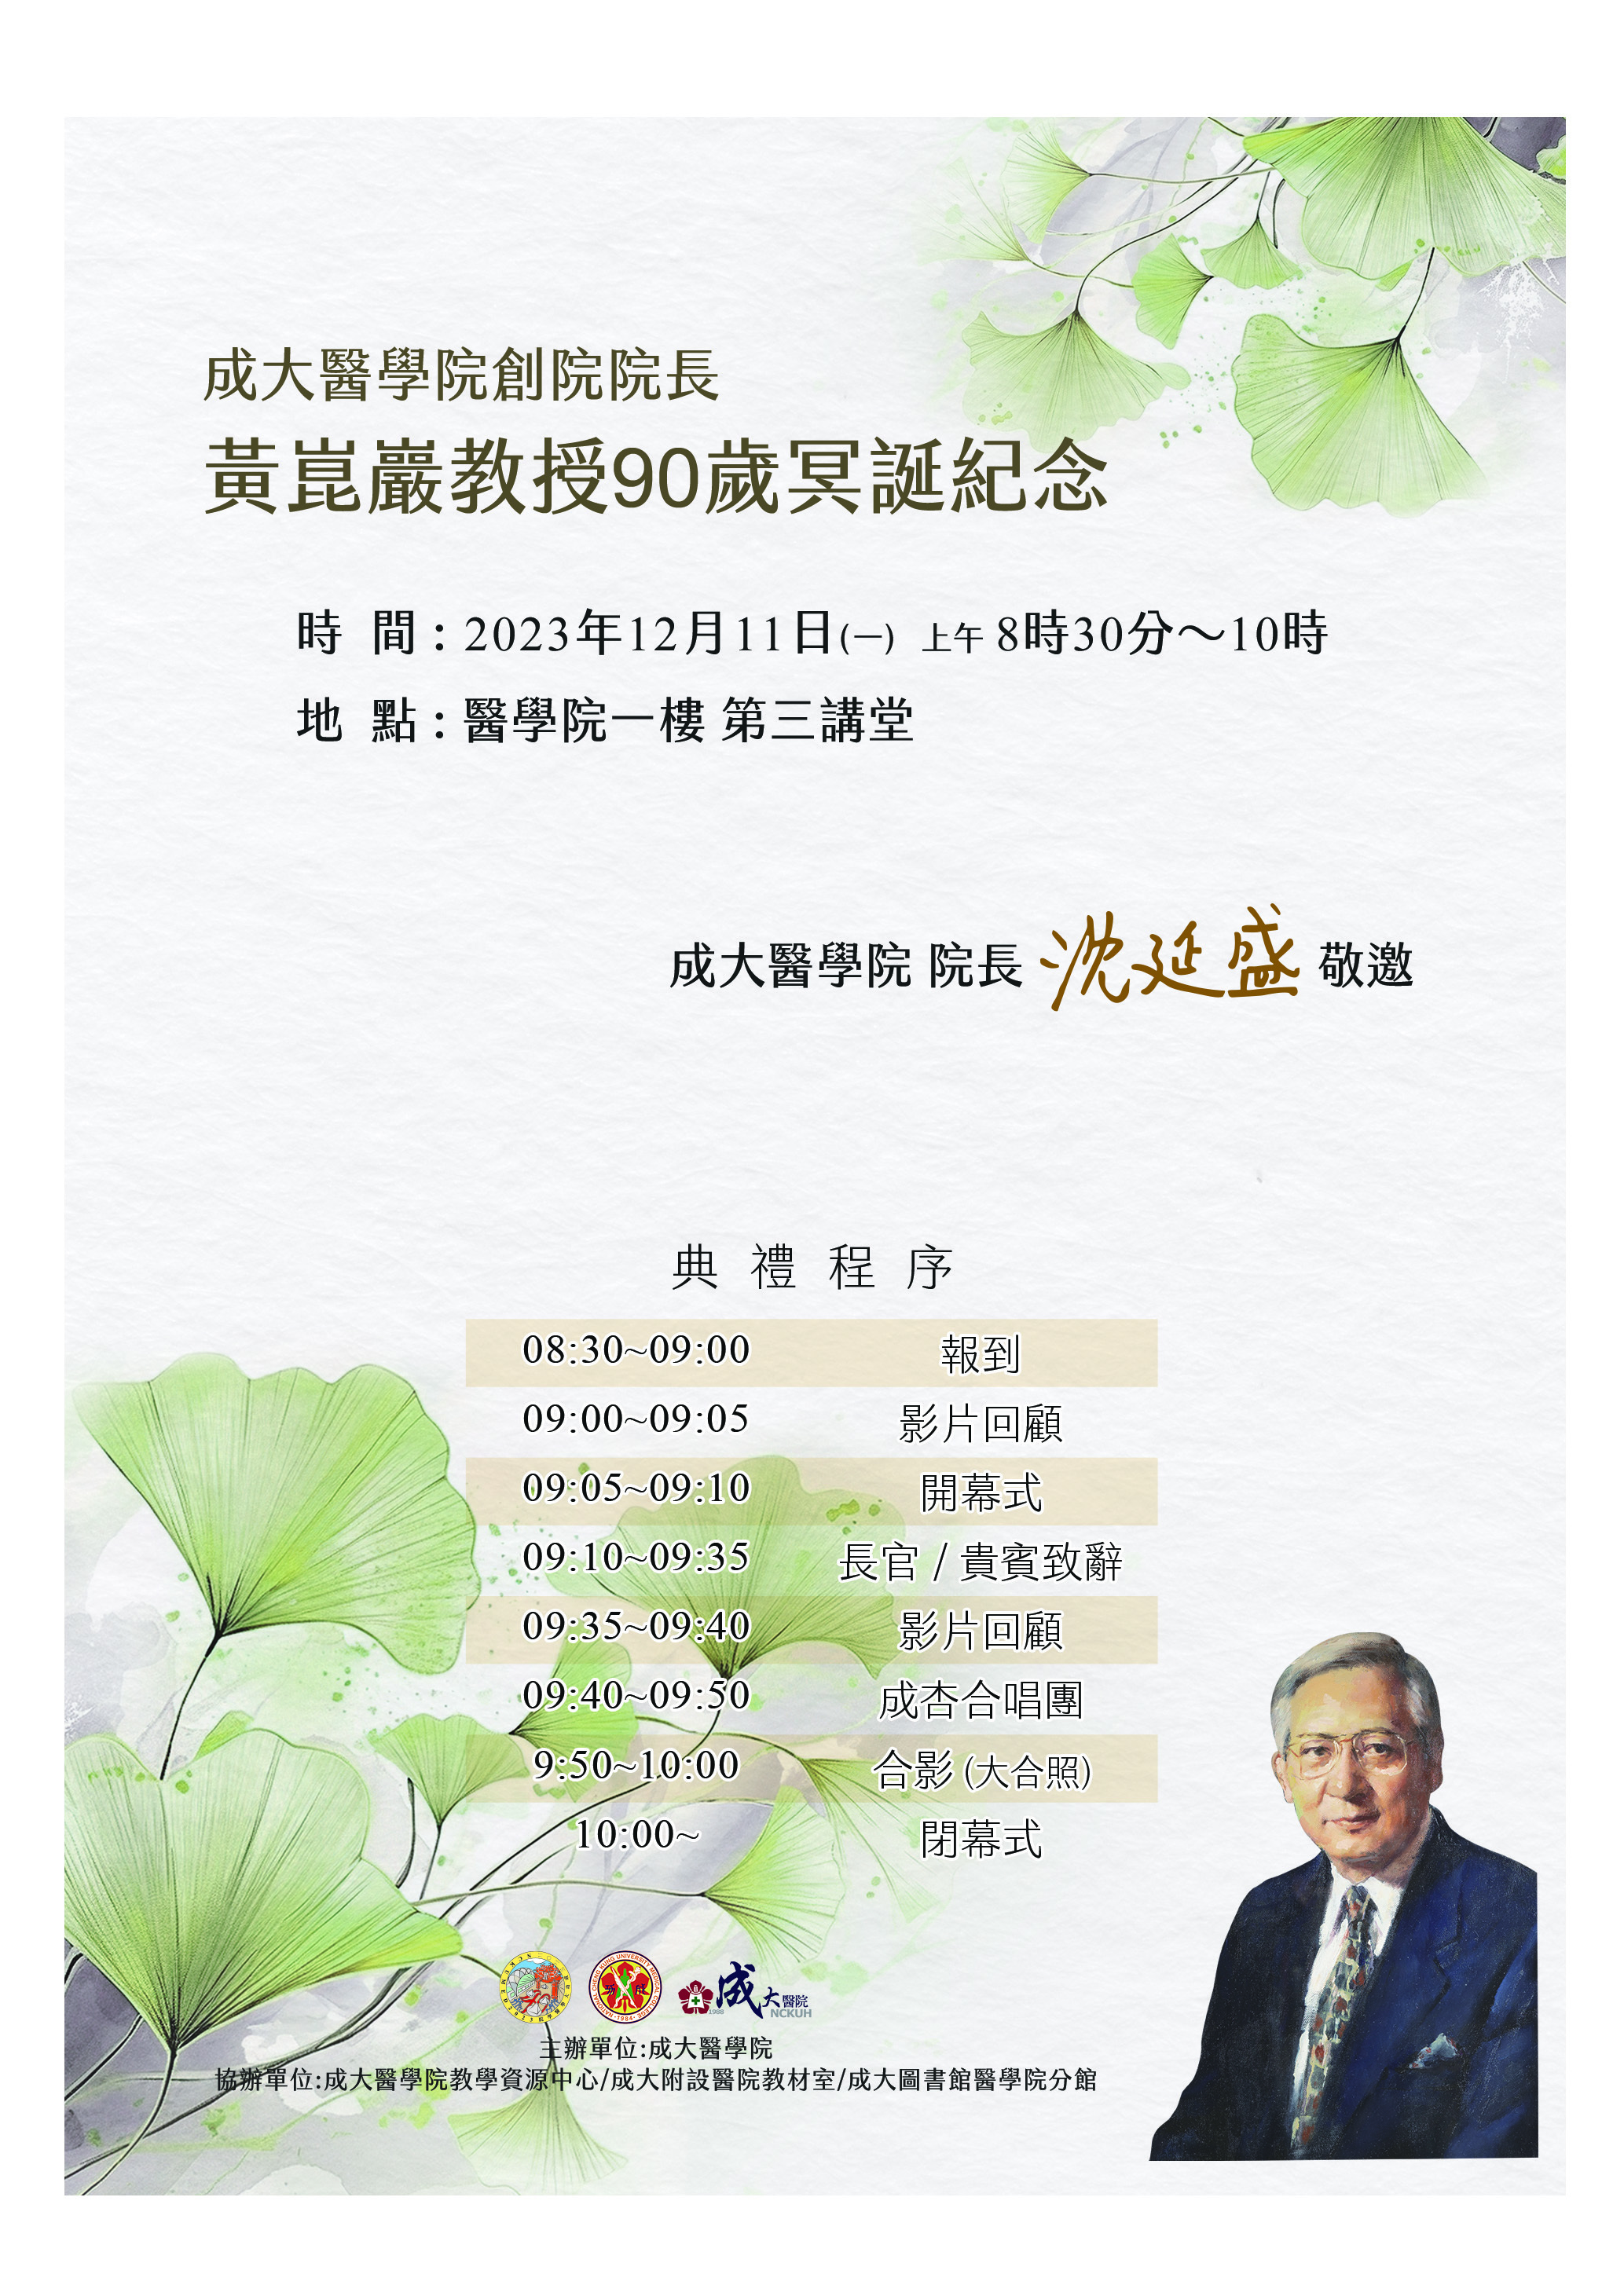 12/11(一)醫學院創院院長黃崑巖教授90歲冥誕紀念